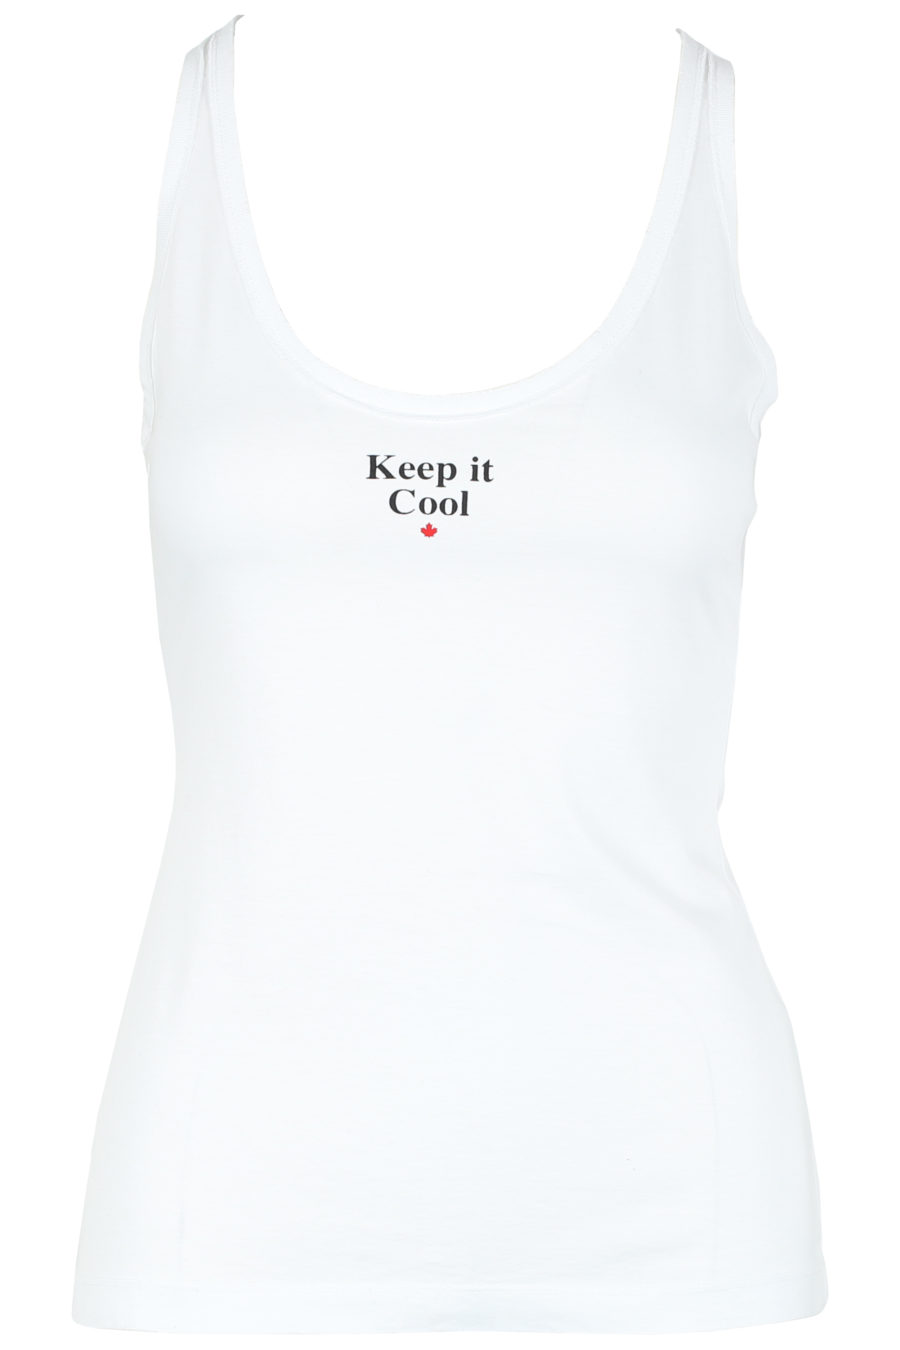 T-shirt de alças branca "Keep it cool" - IMG 6243